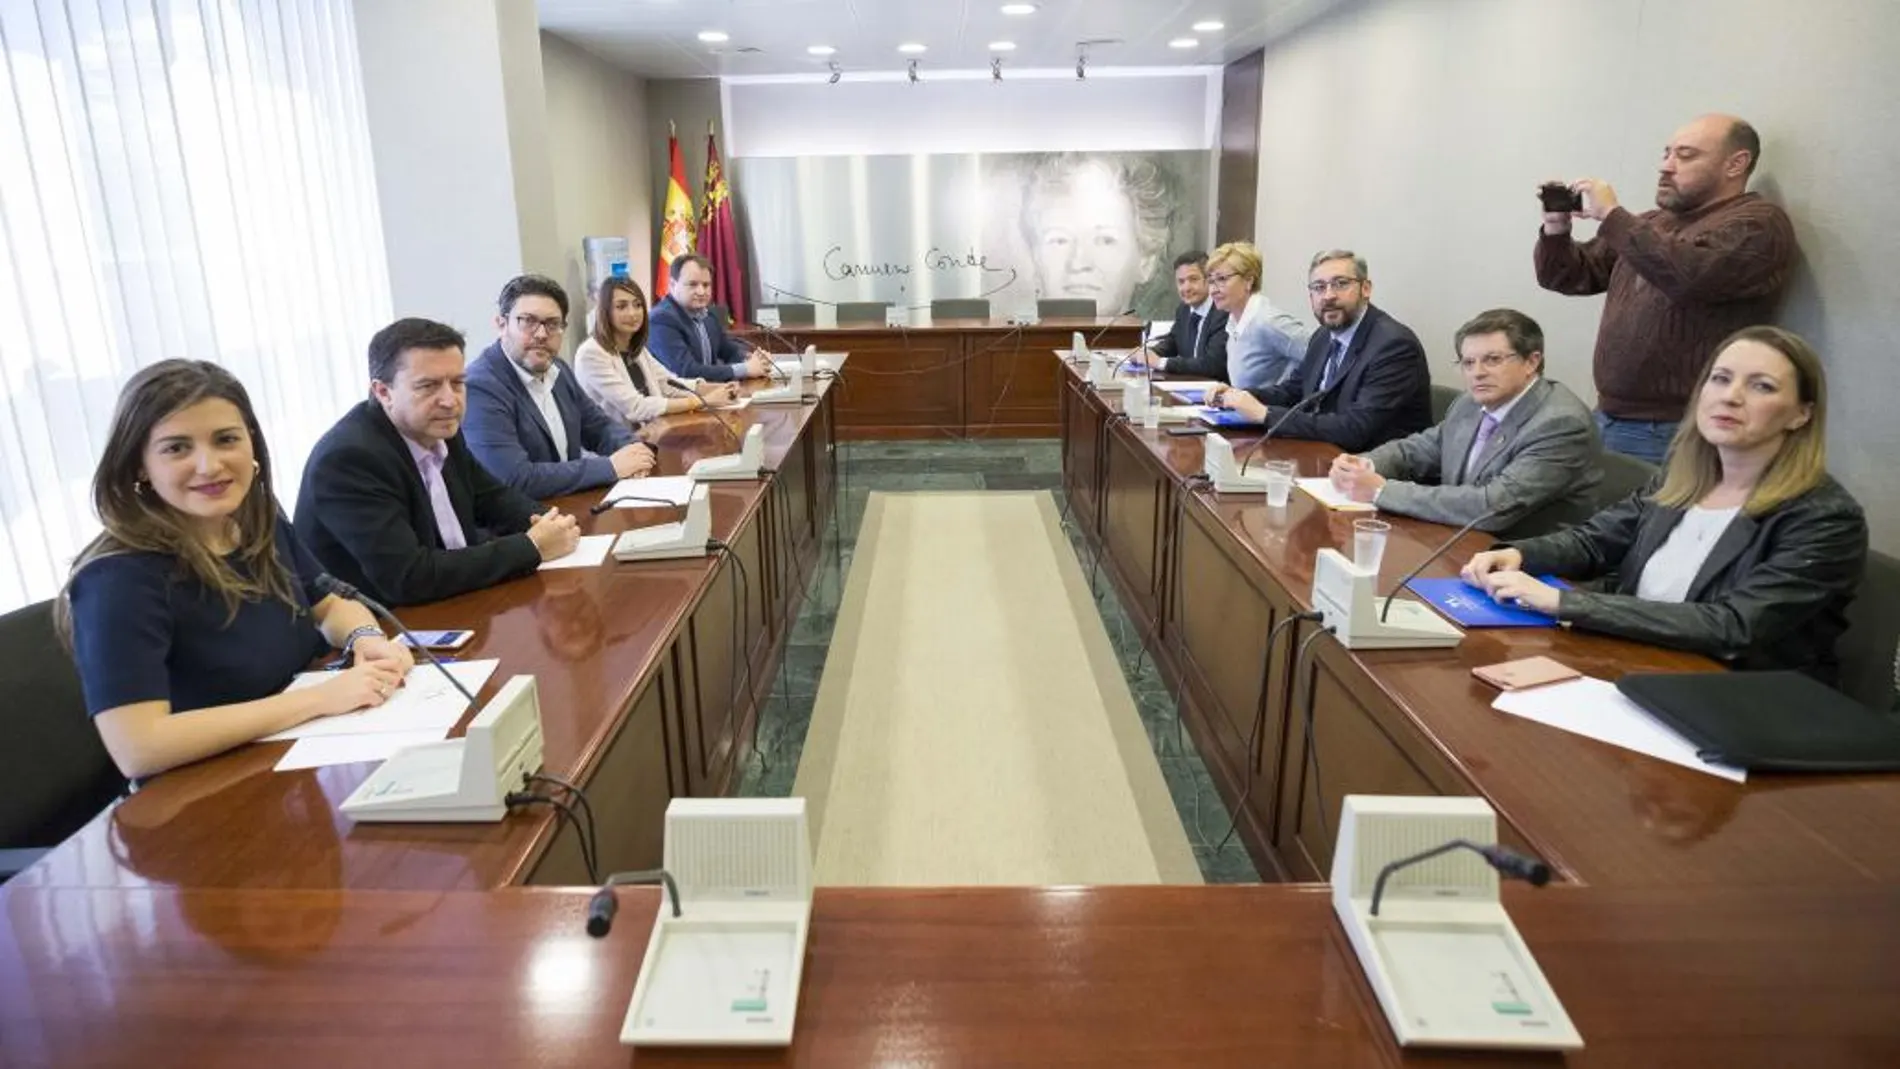 La reunión entre representantes de PP y Cs, ayer en Murcia